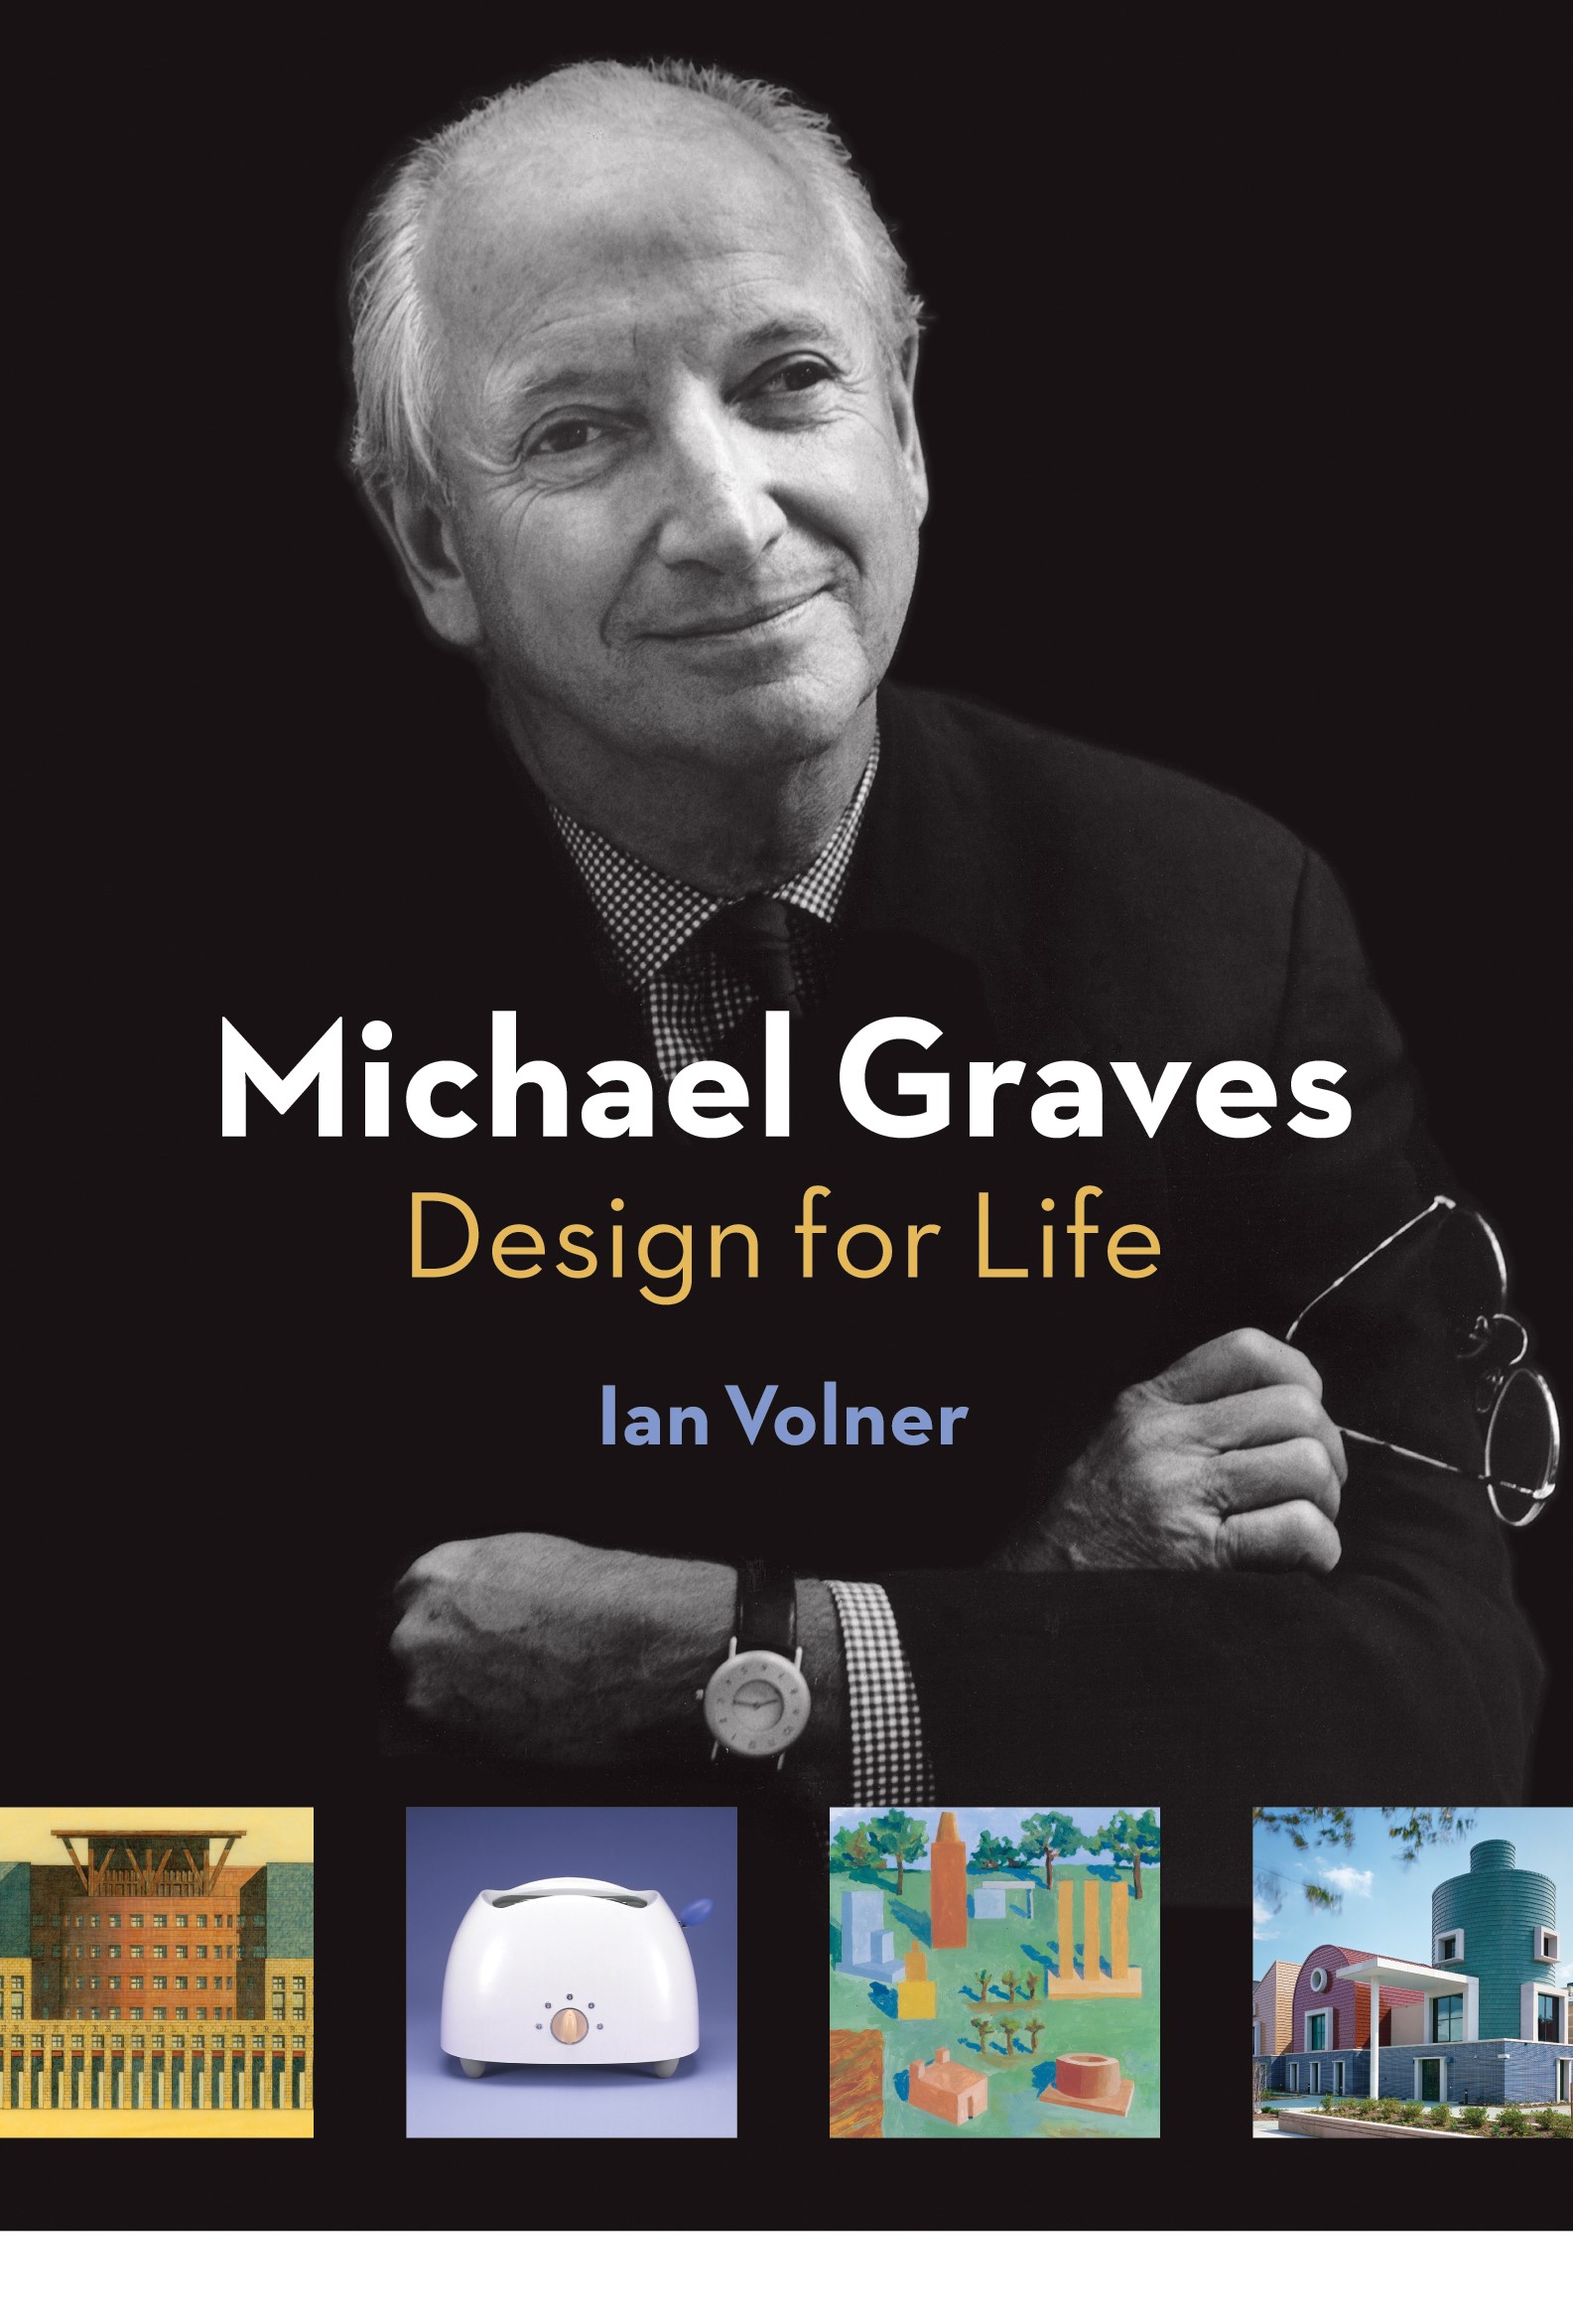 Michael Graves: Design for Life